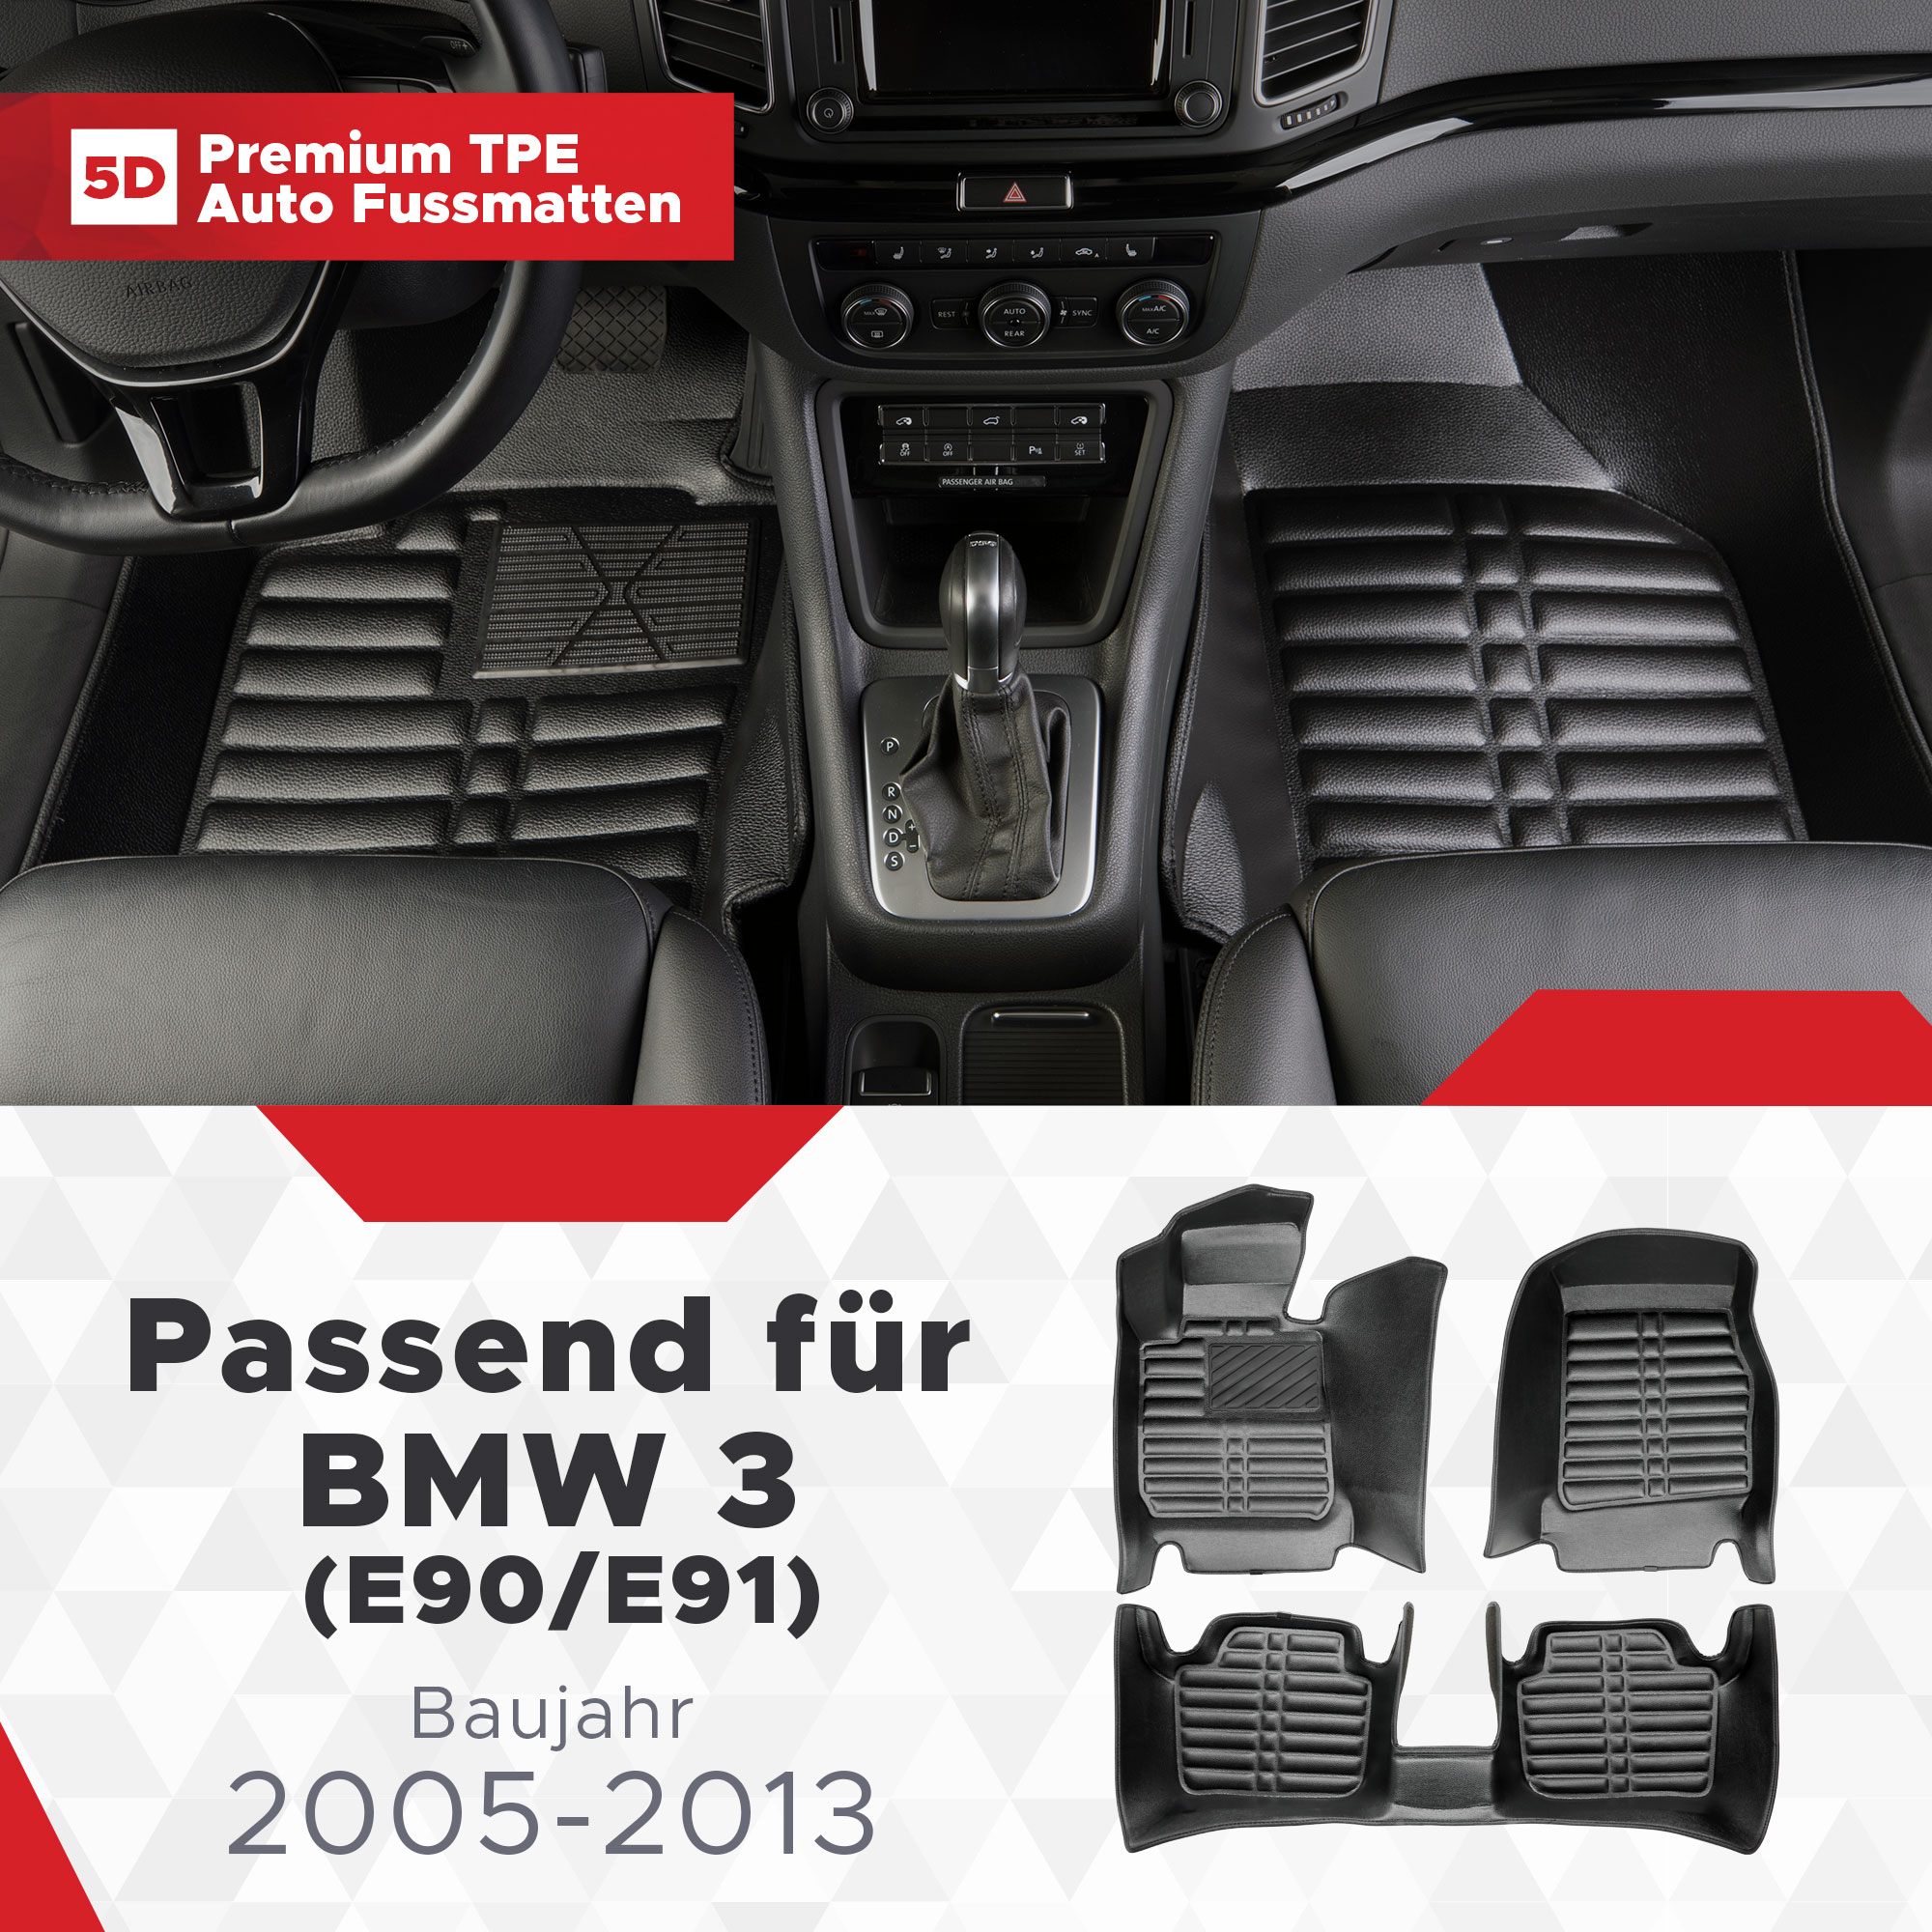 5D BMW 3 (E90/E91) Fussmatten Bj 2005-2013 TPE